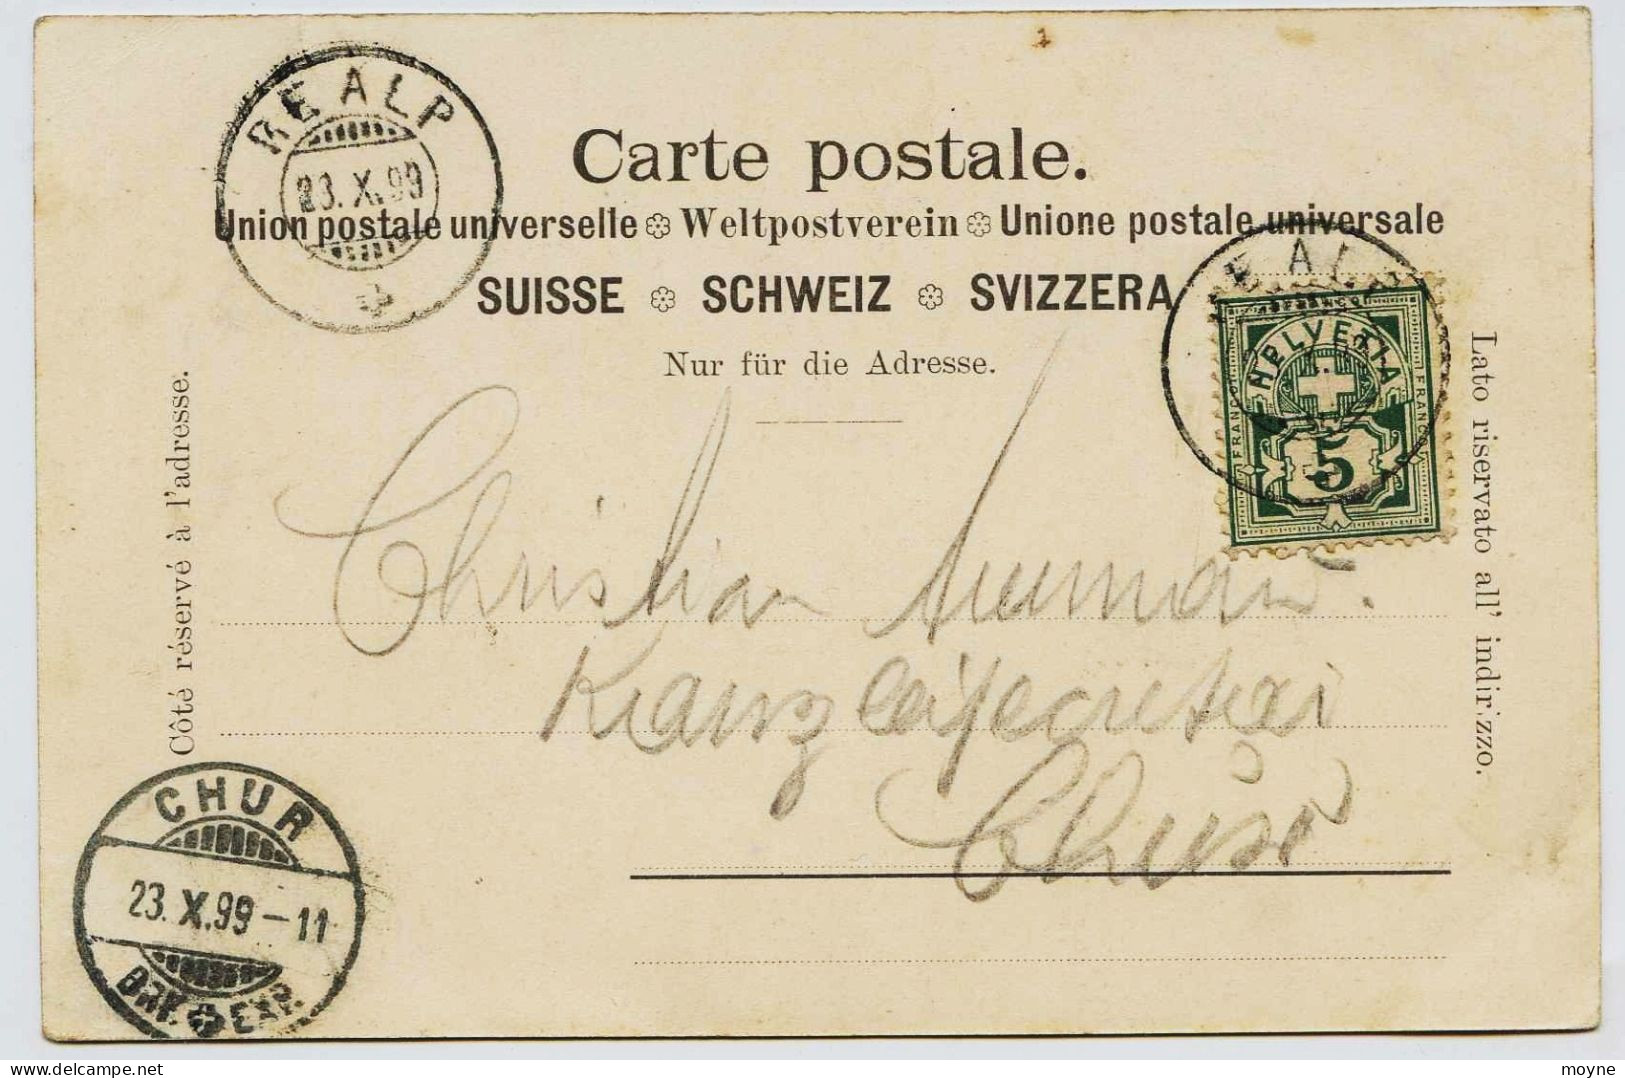 3072 - Suisse - GRUSS  VON   REALP (village) -   Circulée En 1899 --  Cachets Au Dos  TRES  RARE - Au